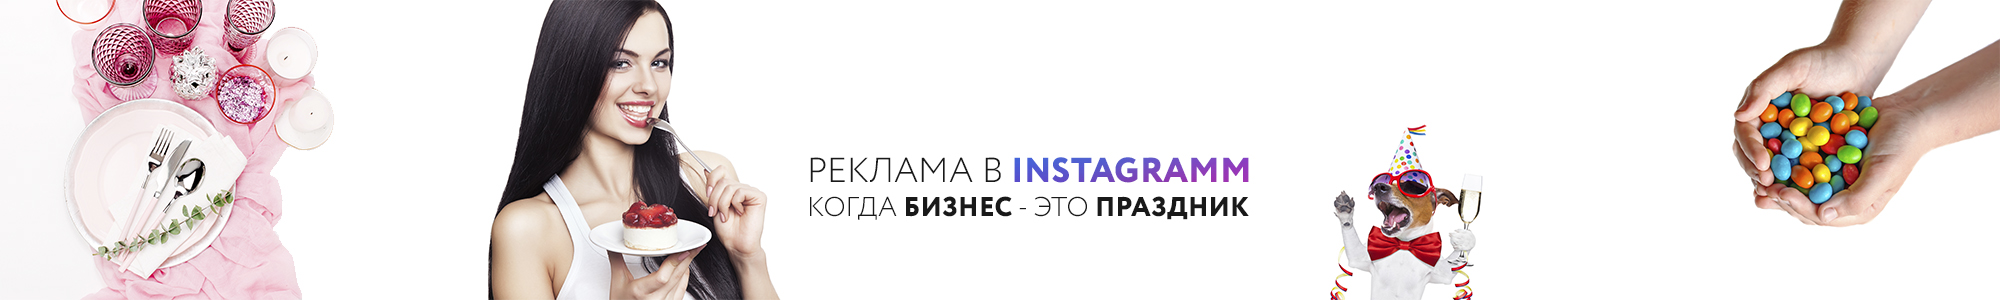 Ведение страниц в инстаграмм и реклама в Instagram